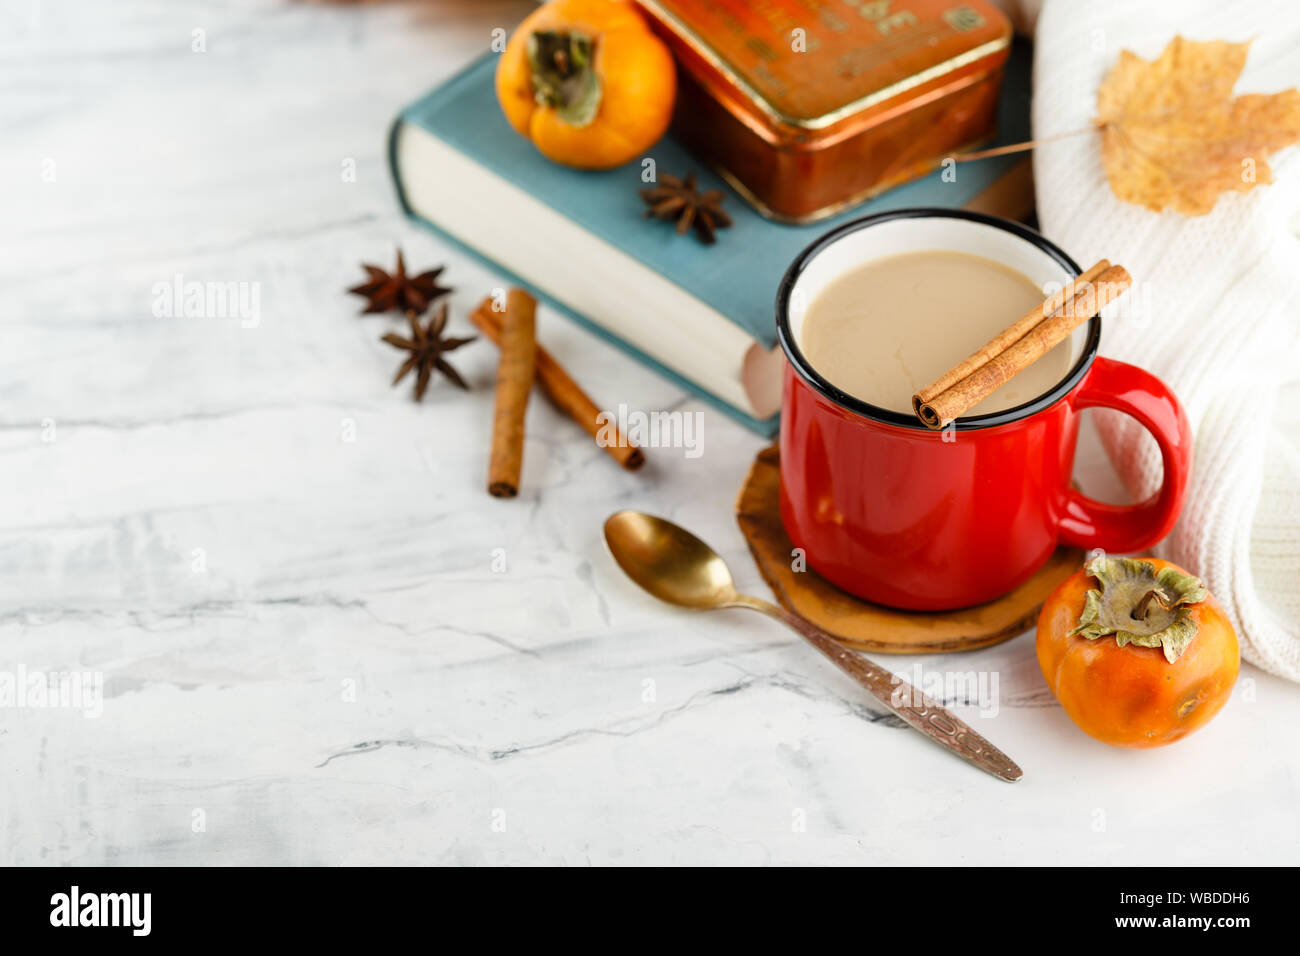 Emaillierte rot Tasse Kaffee mit Milch, Gewürzen - Zimtstangen und Anis Sterne, Buch, Kaki, Pullover, Herbst Ahorn Fox auf hellen Hintergrund Stockfoto